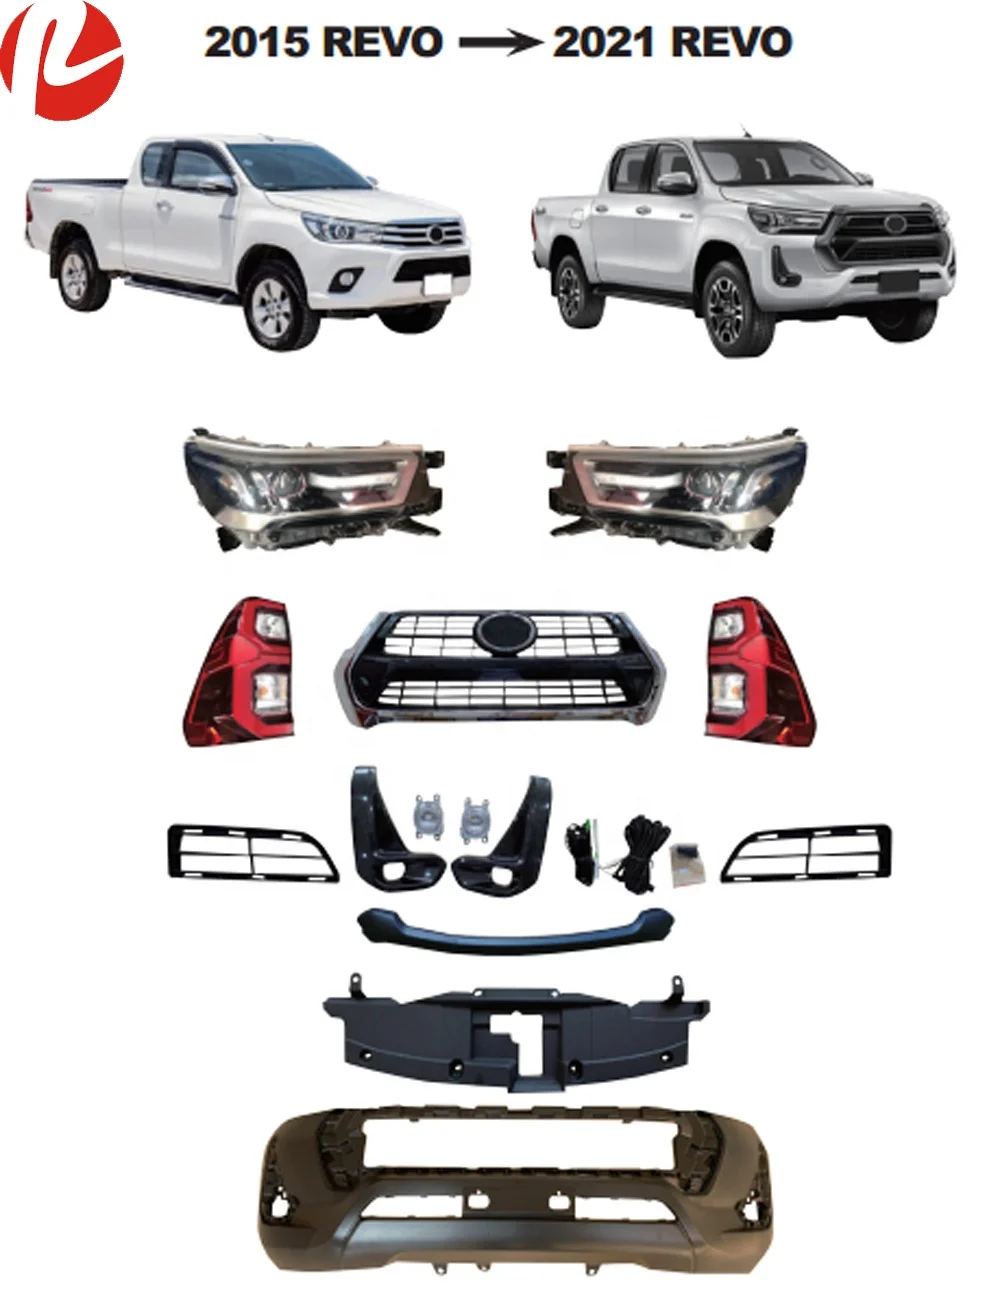 Pantanal Auto Parts - Grande variedade de Peças para Toyota Hilux